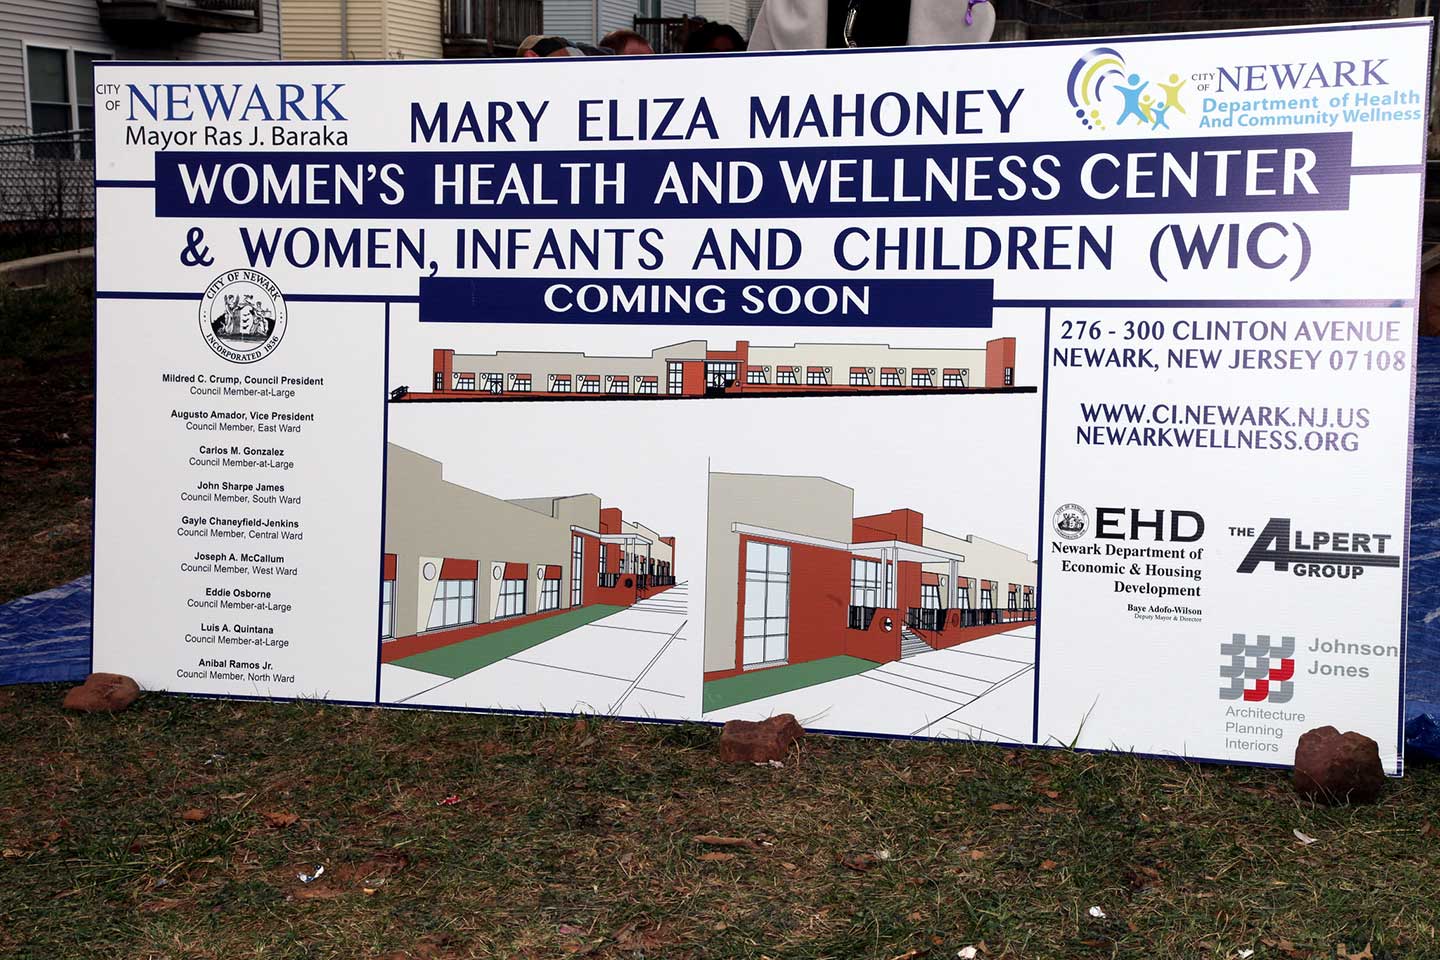 mary eliza mahoney health center newark 300 clinton avenue